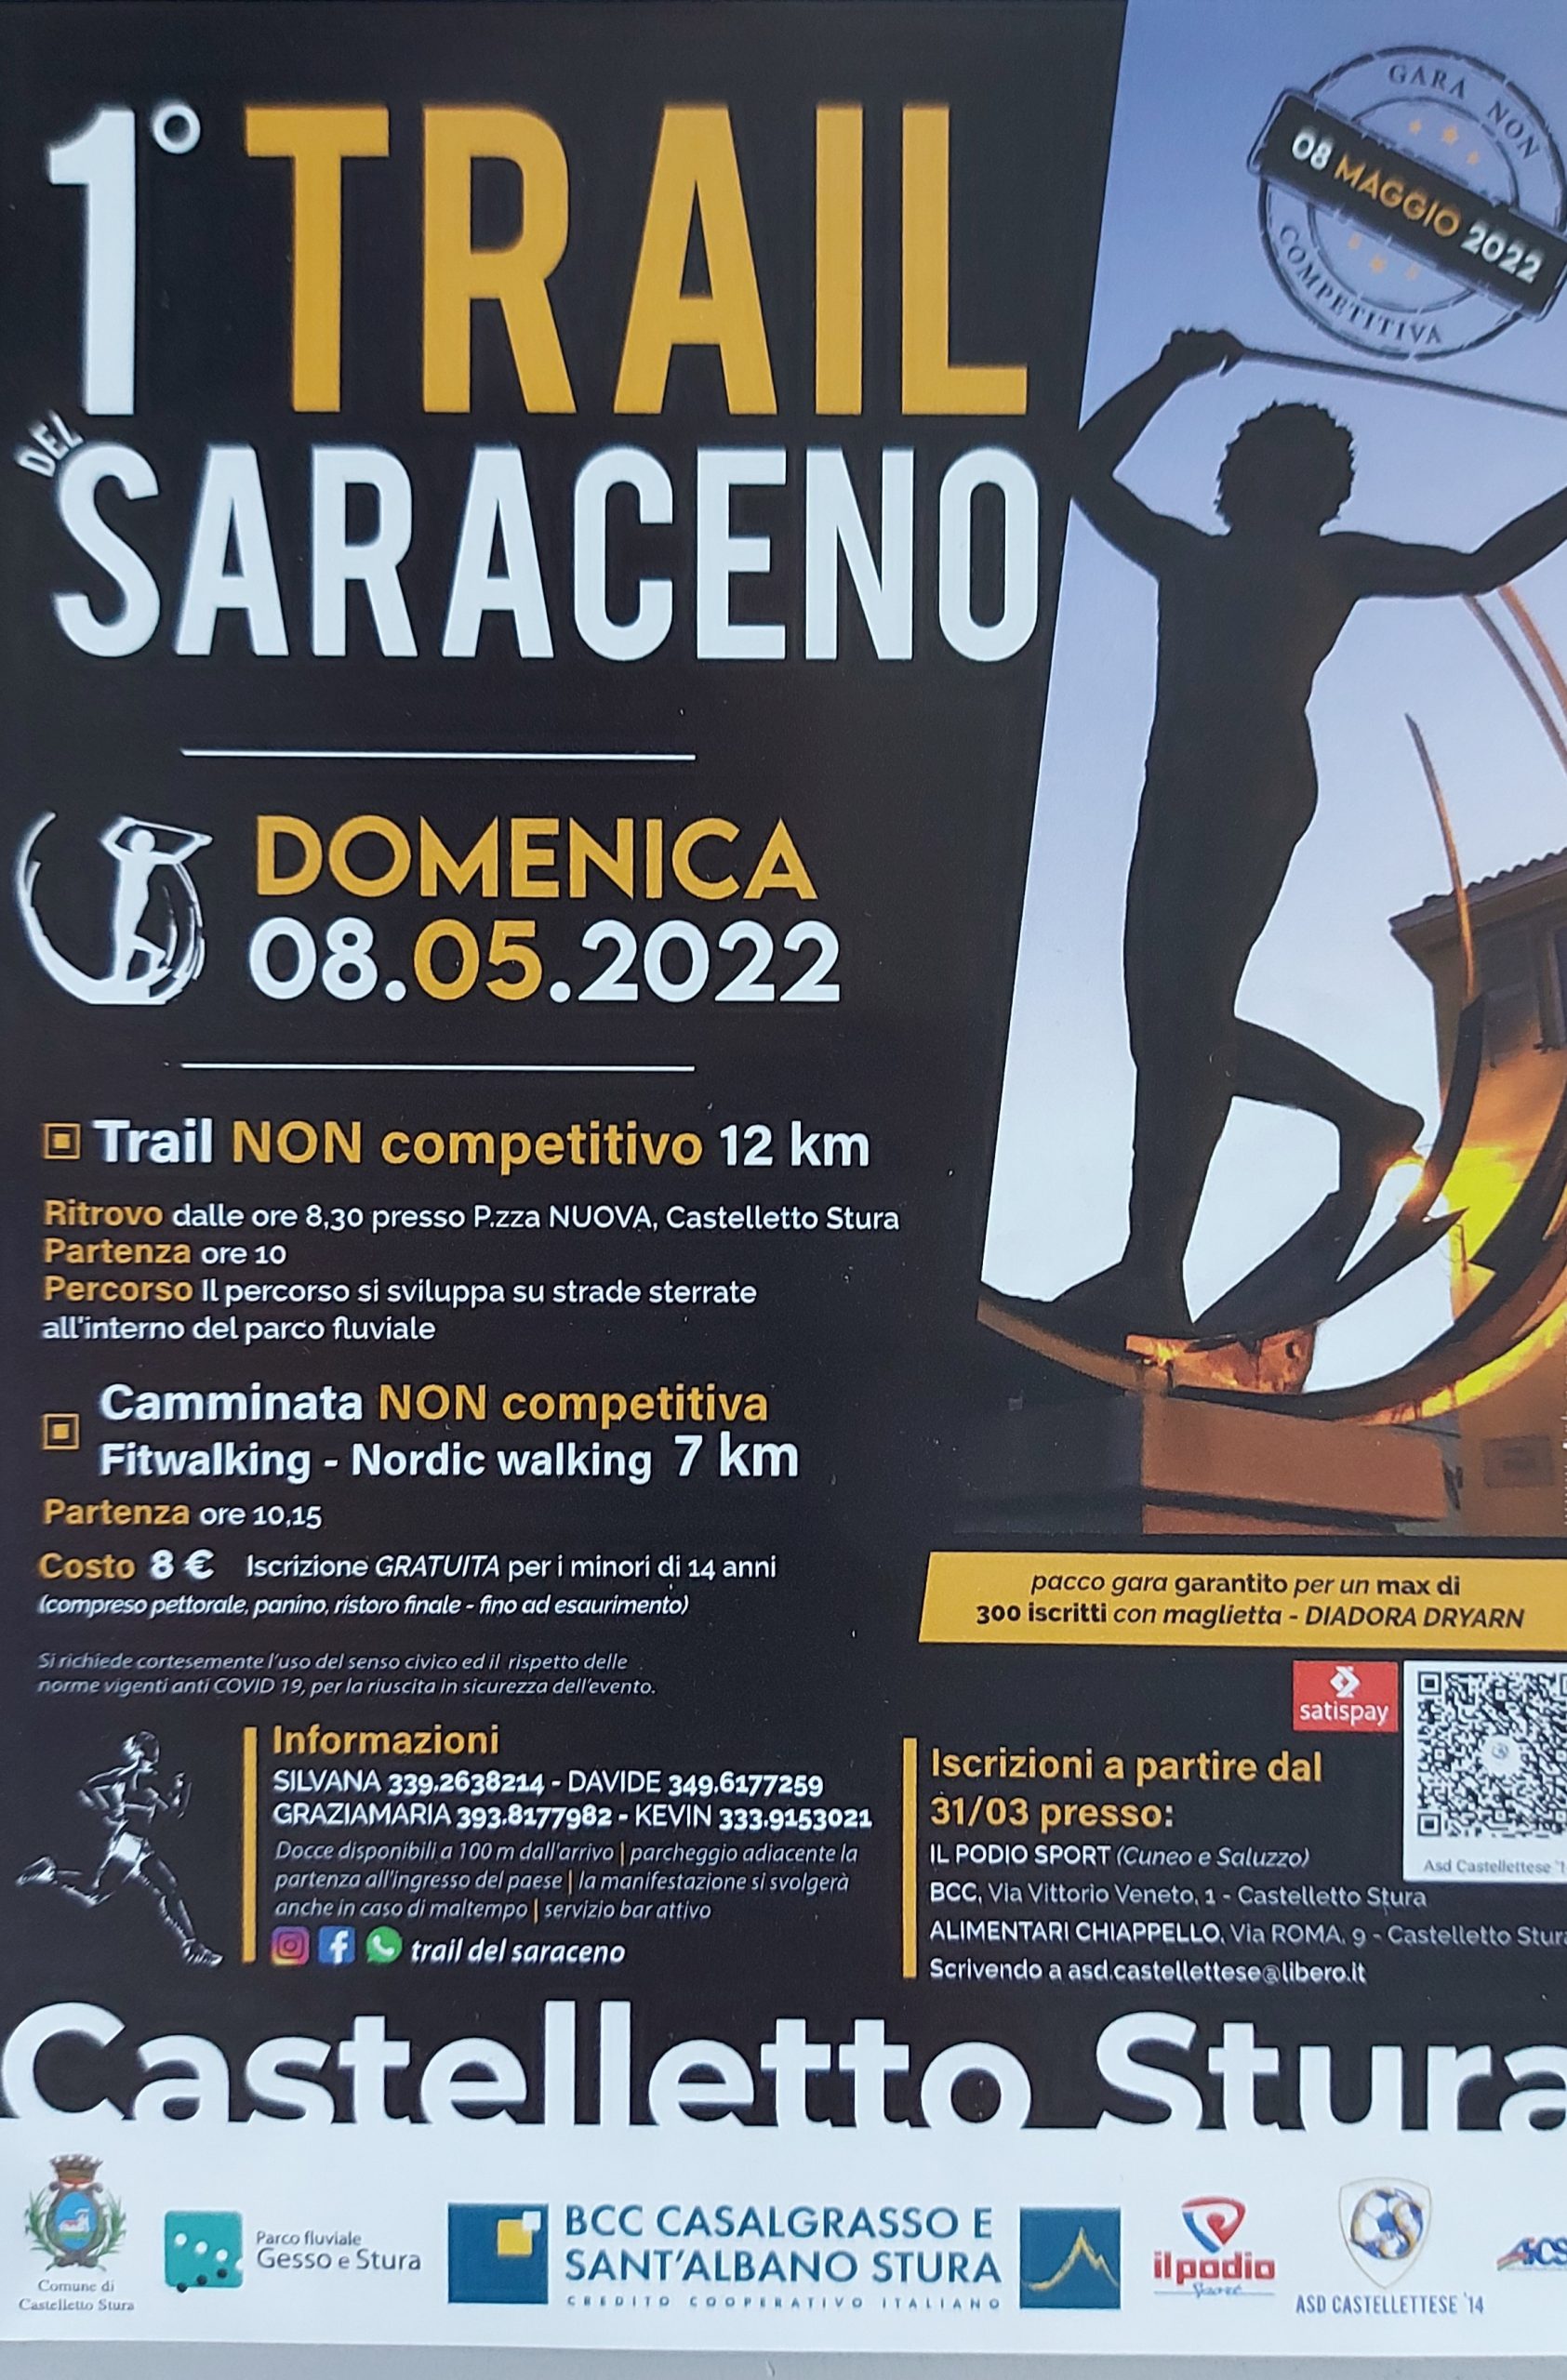 Castelletto Stura - Trail del Saraceno